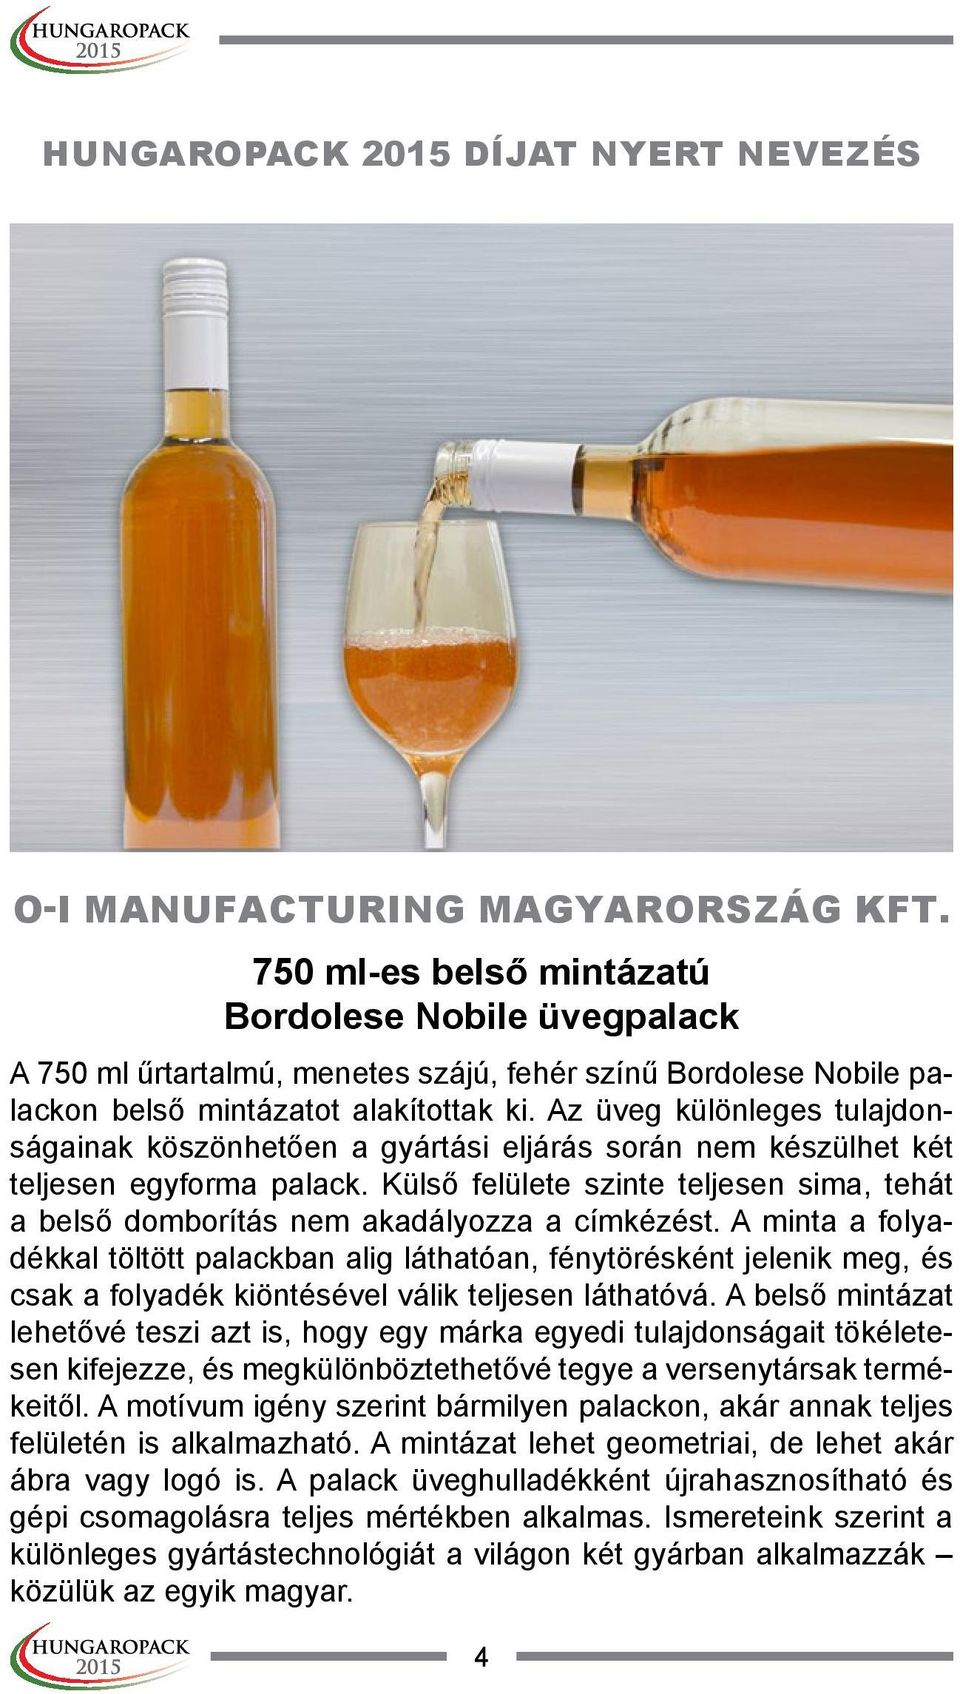 Az üveg különleges tulajdonságainak köszönhetően a gyártási eljárás során nem készülhet két teljesen egyforma palack.